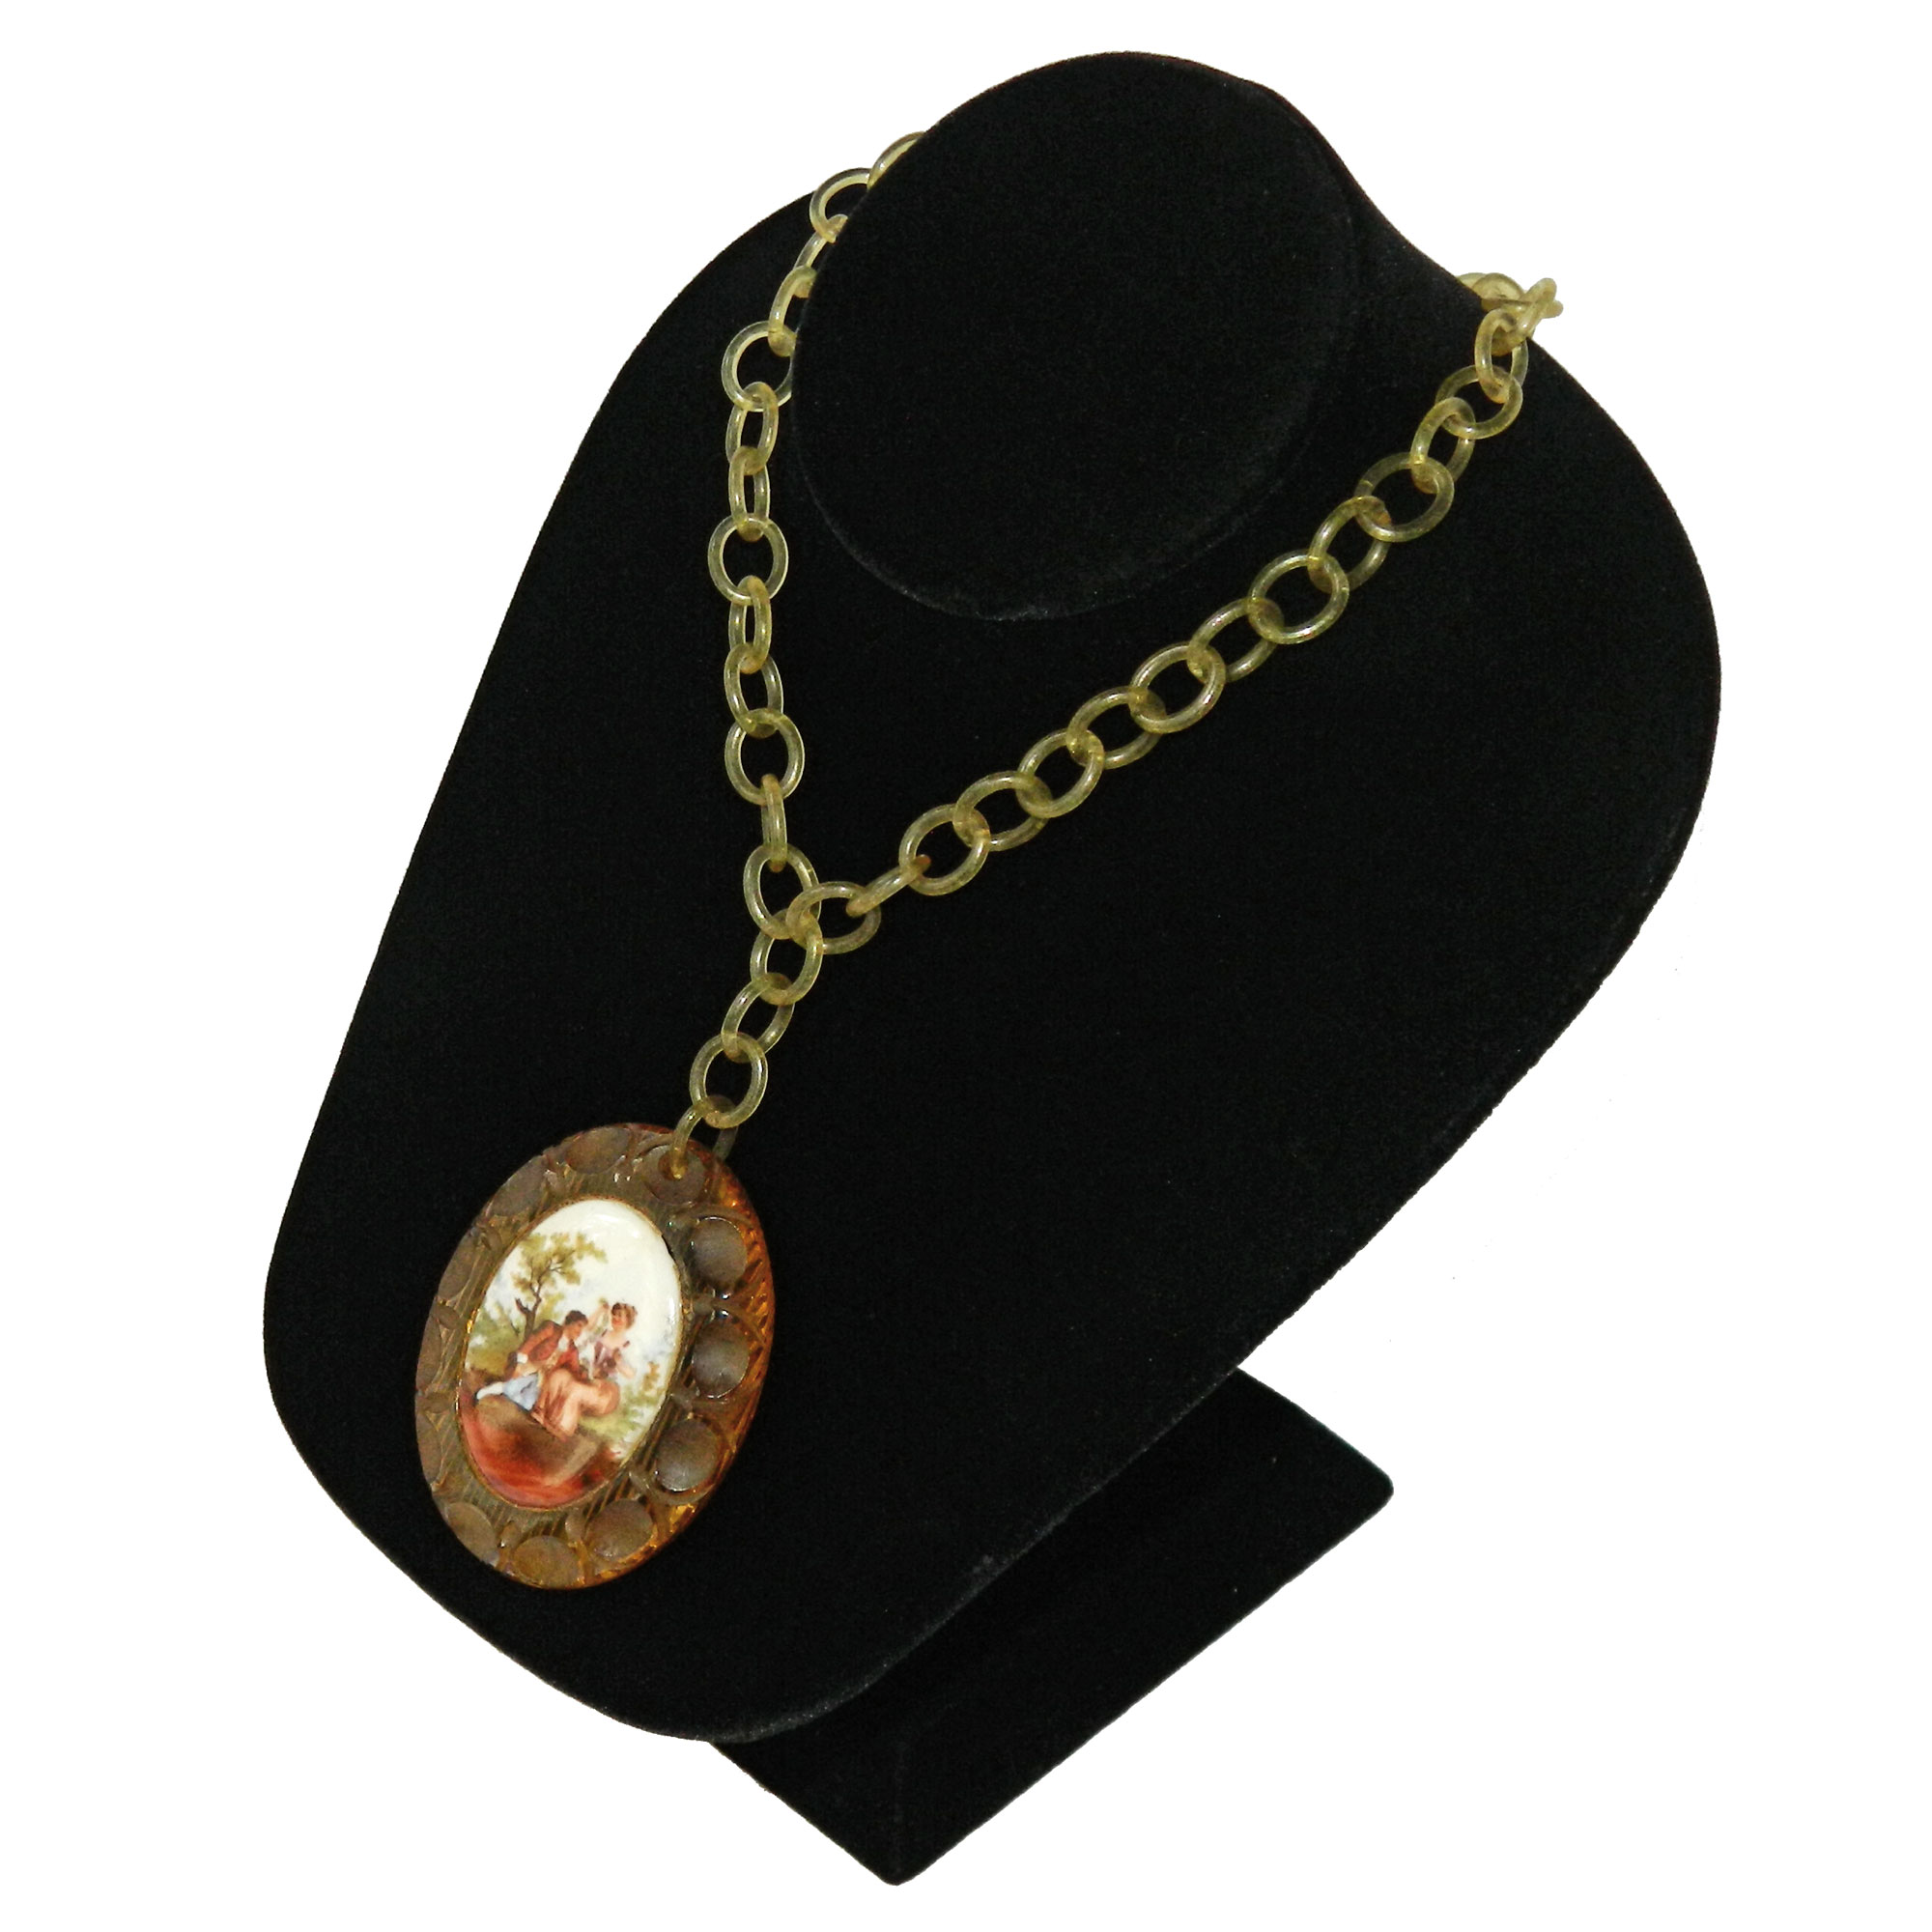 1930s bakelite pendant necklace